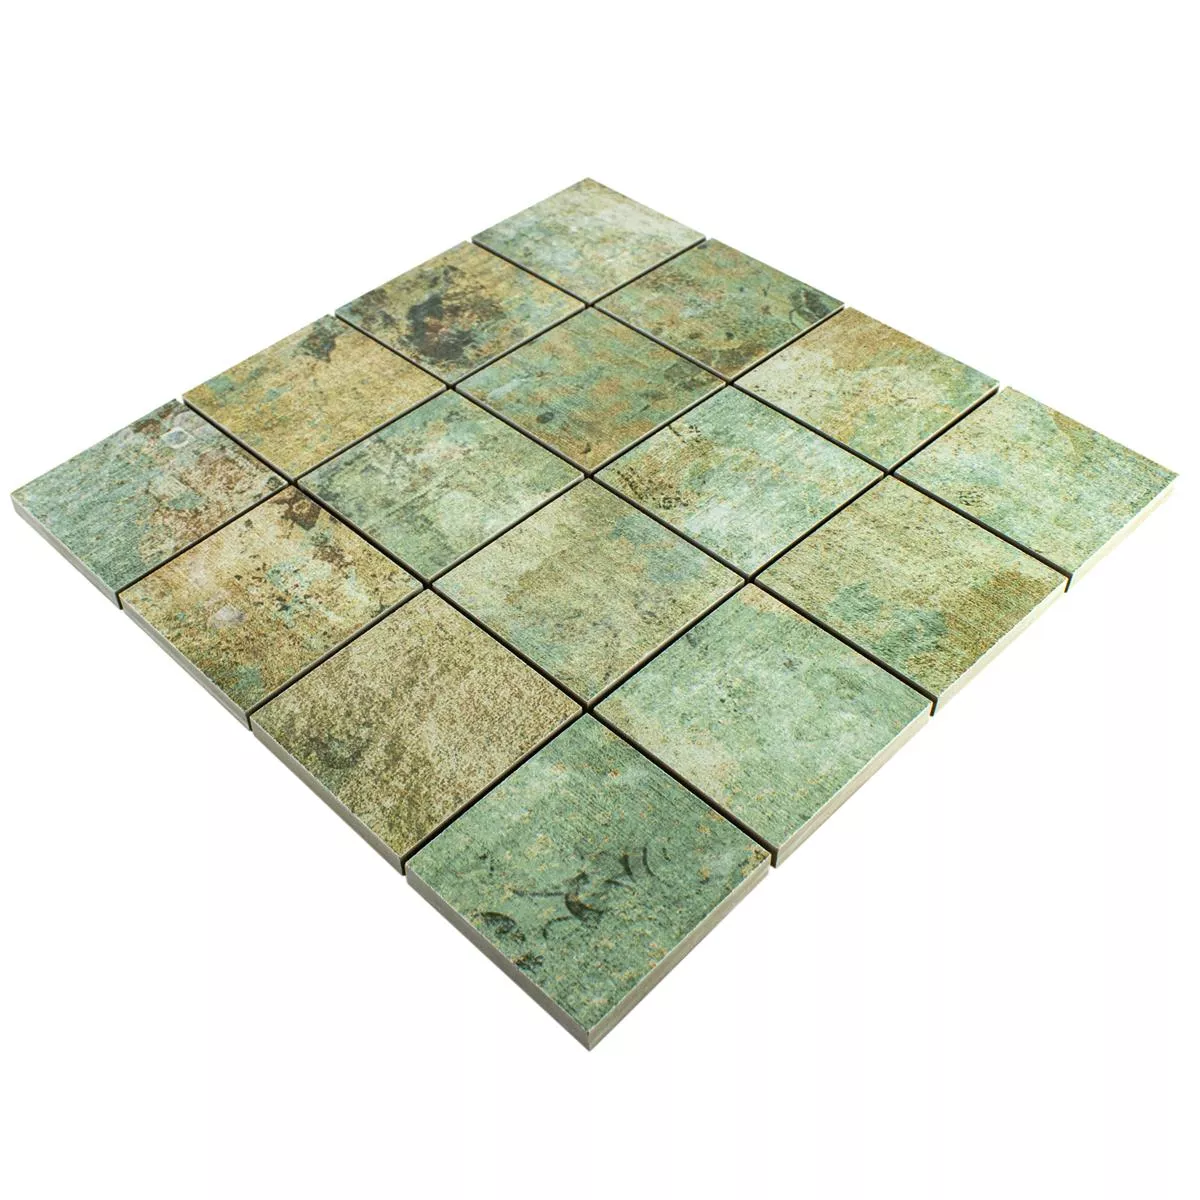 Sample Ceramic Mosaic Tiles Moonlight Brown Green